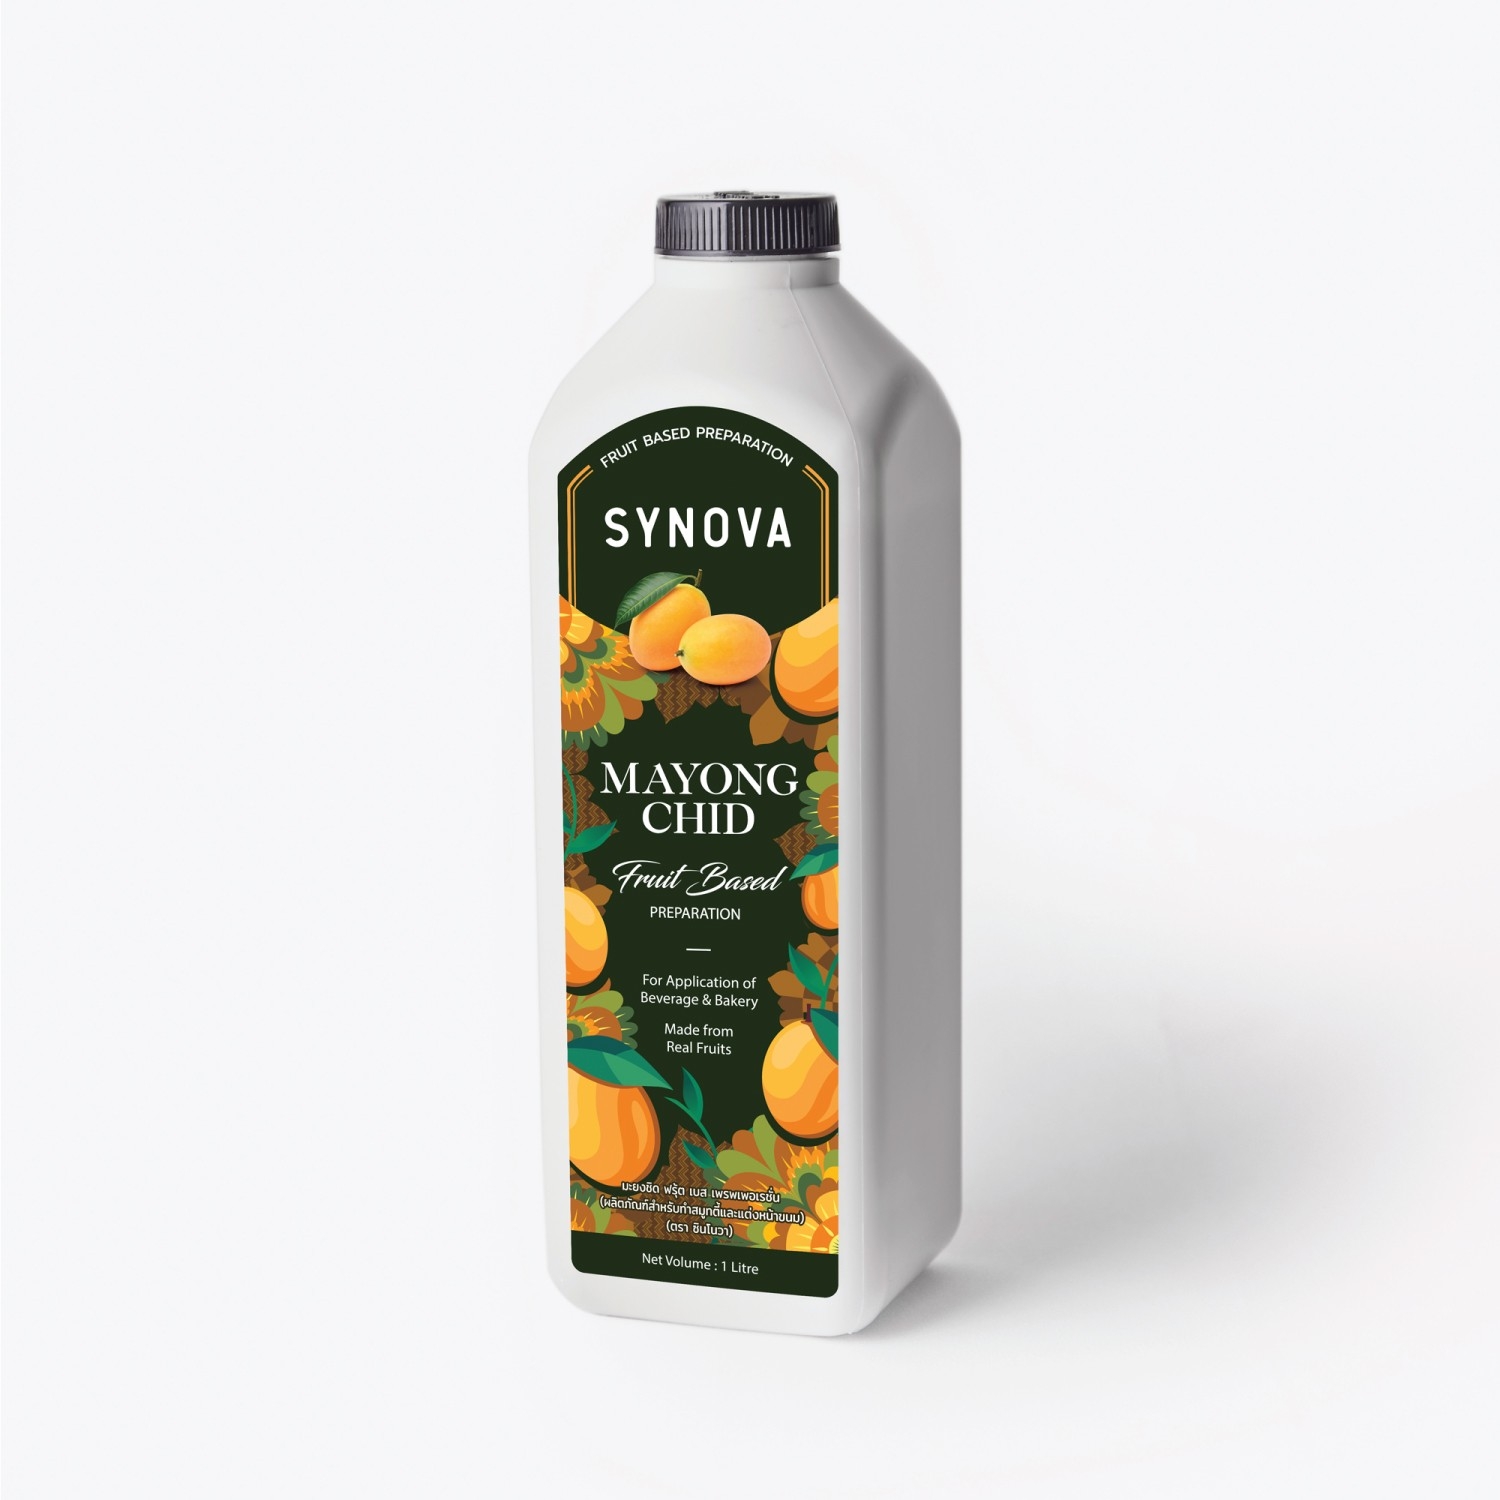 น้ำผลไม้เข้มข้น : SYNOVA ซอสมะยงชิดเข้มข้น (ยกกล่อง)